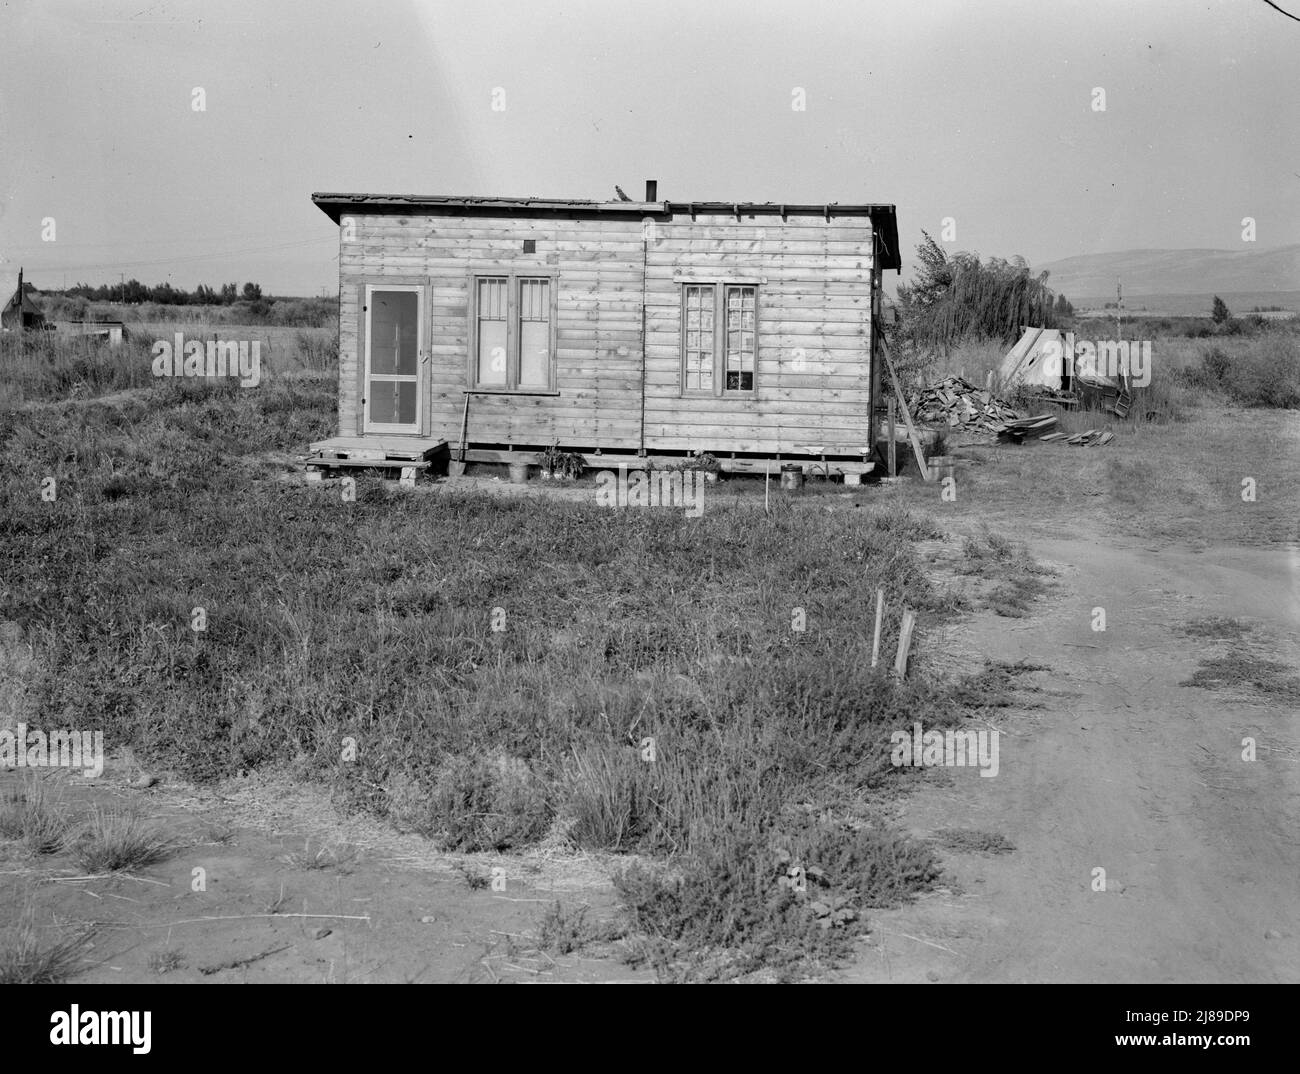 Washington, Yakima. Las casas están construidas poco a poco con cualquier material disponible. Muchos refugiados por sequía se asientan en Sumac Park, uno de los muchos grandes grilletes alrededor de Yakima. Foto de stock